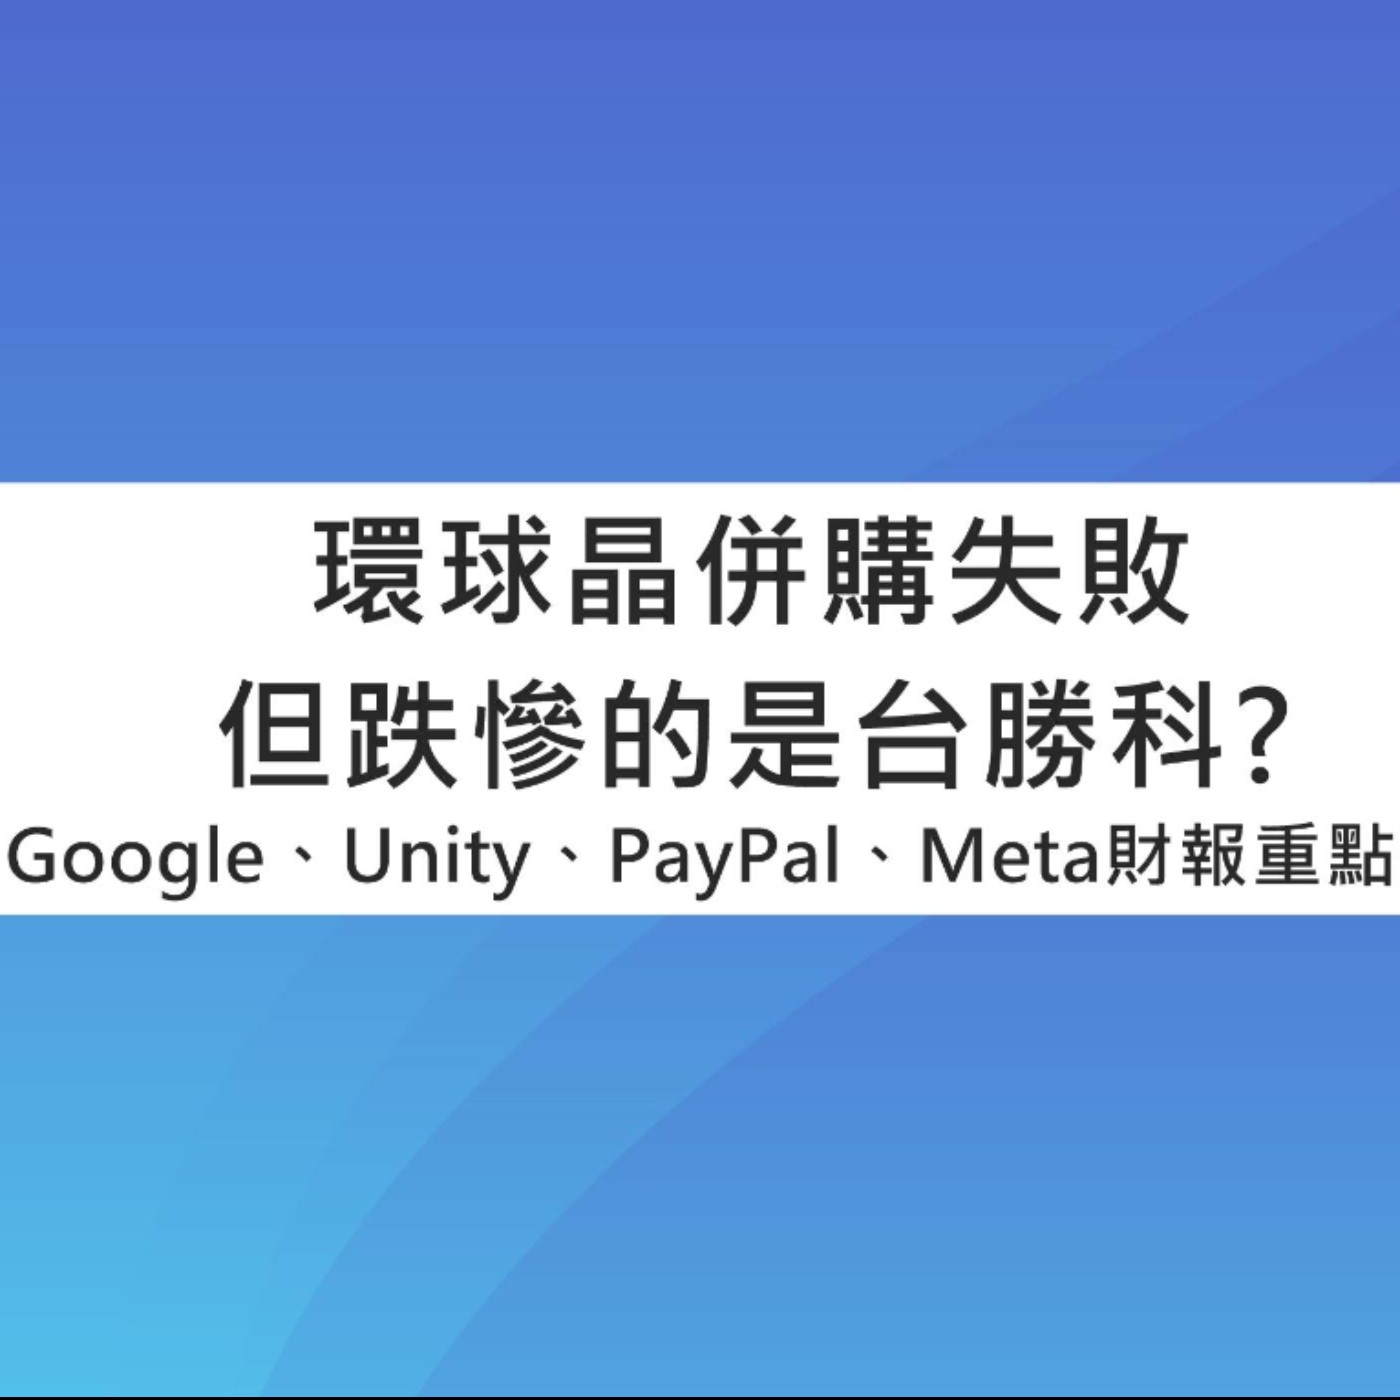 [#73] 投資分享 | 環球晶併購失敗但跌慘的是台勝科？Google、Unity、PayPal、Meta財報重點整理